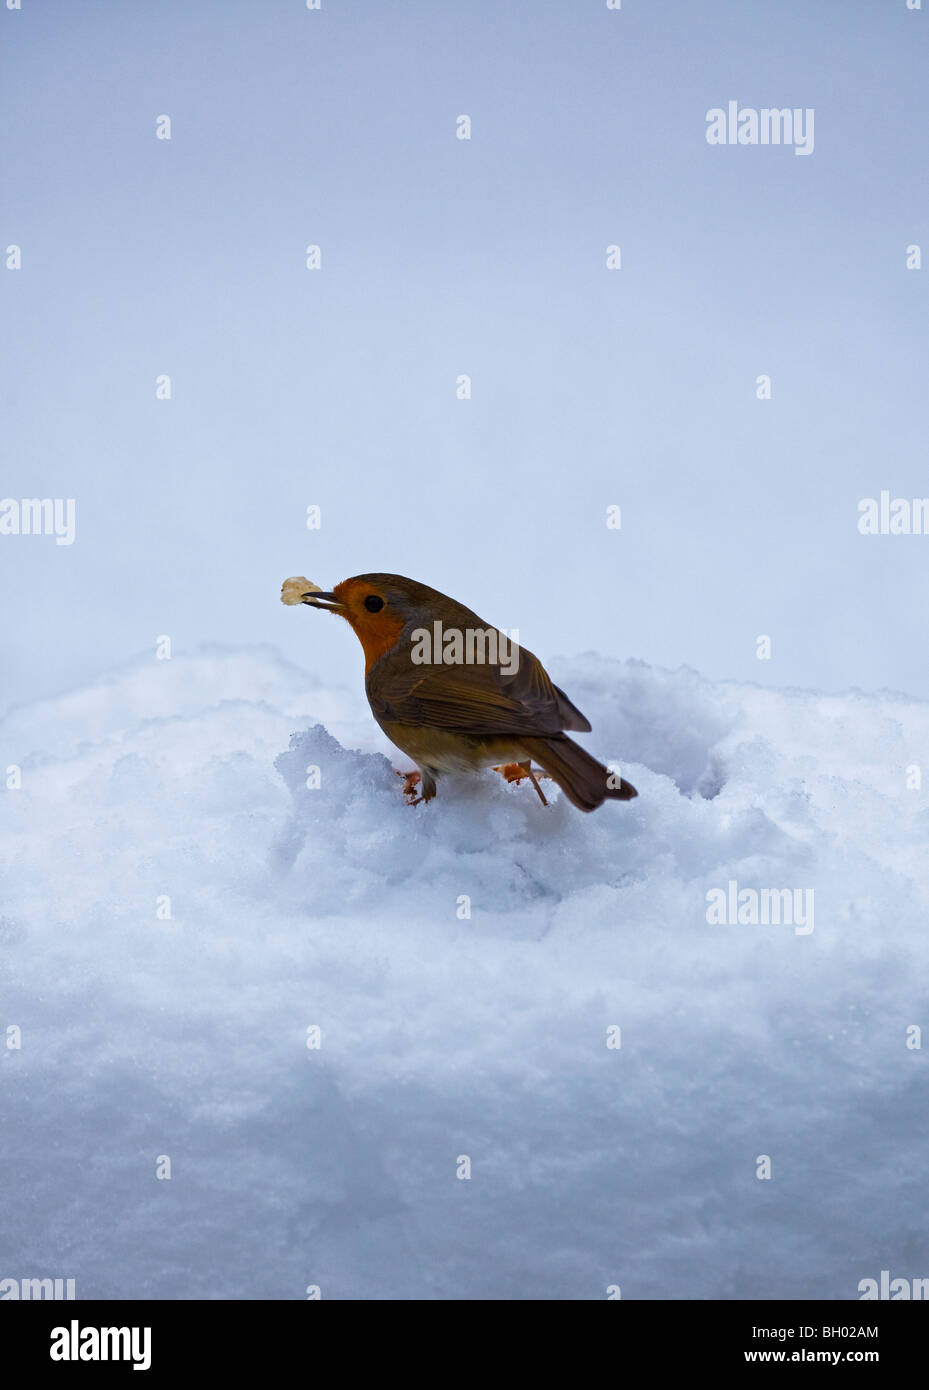 Robin jardin oiseau dans la neige profonde avec des aliments en bec Banque D'Images